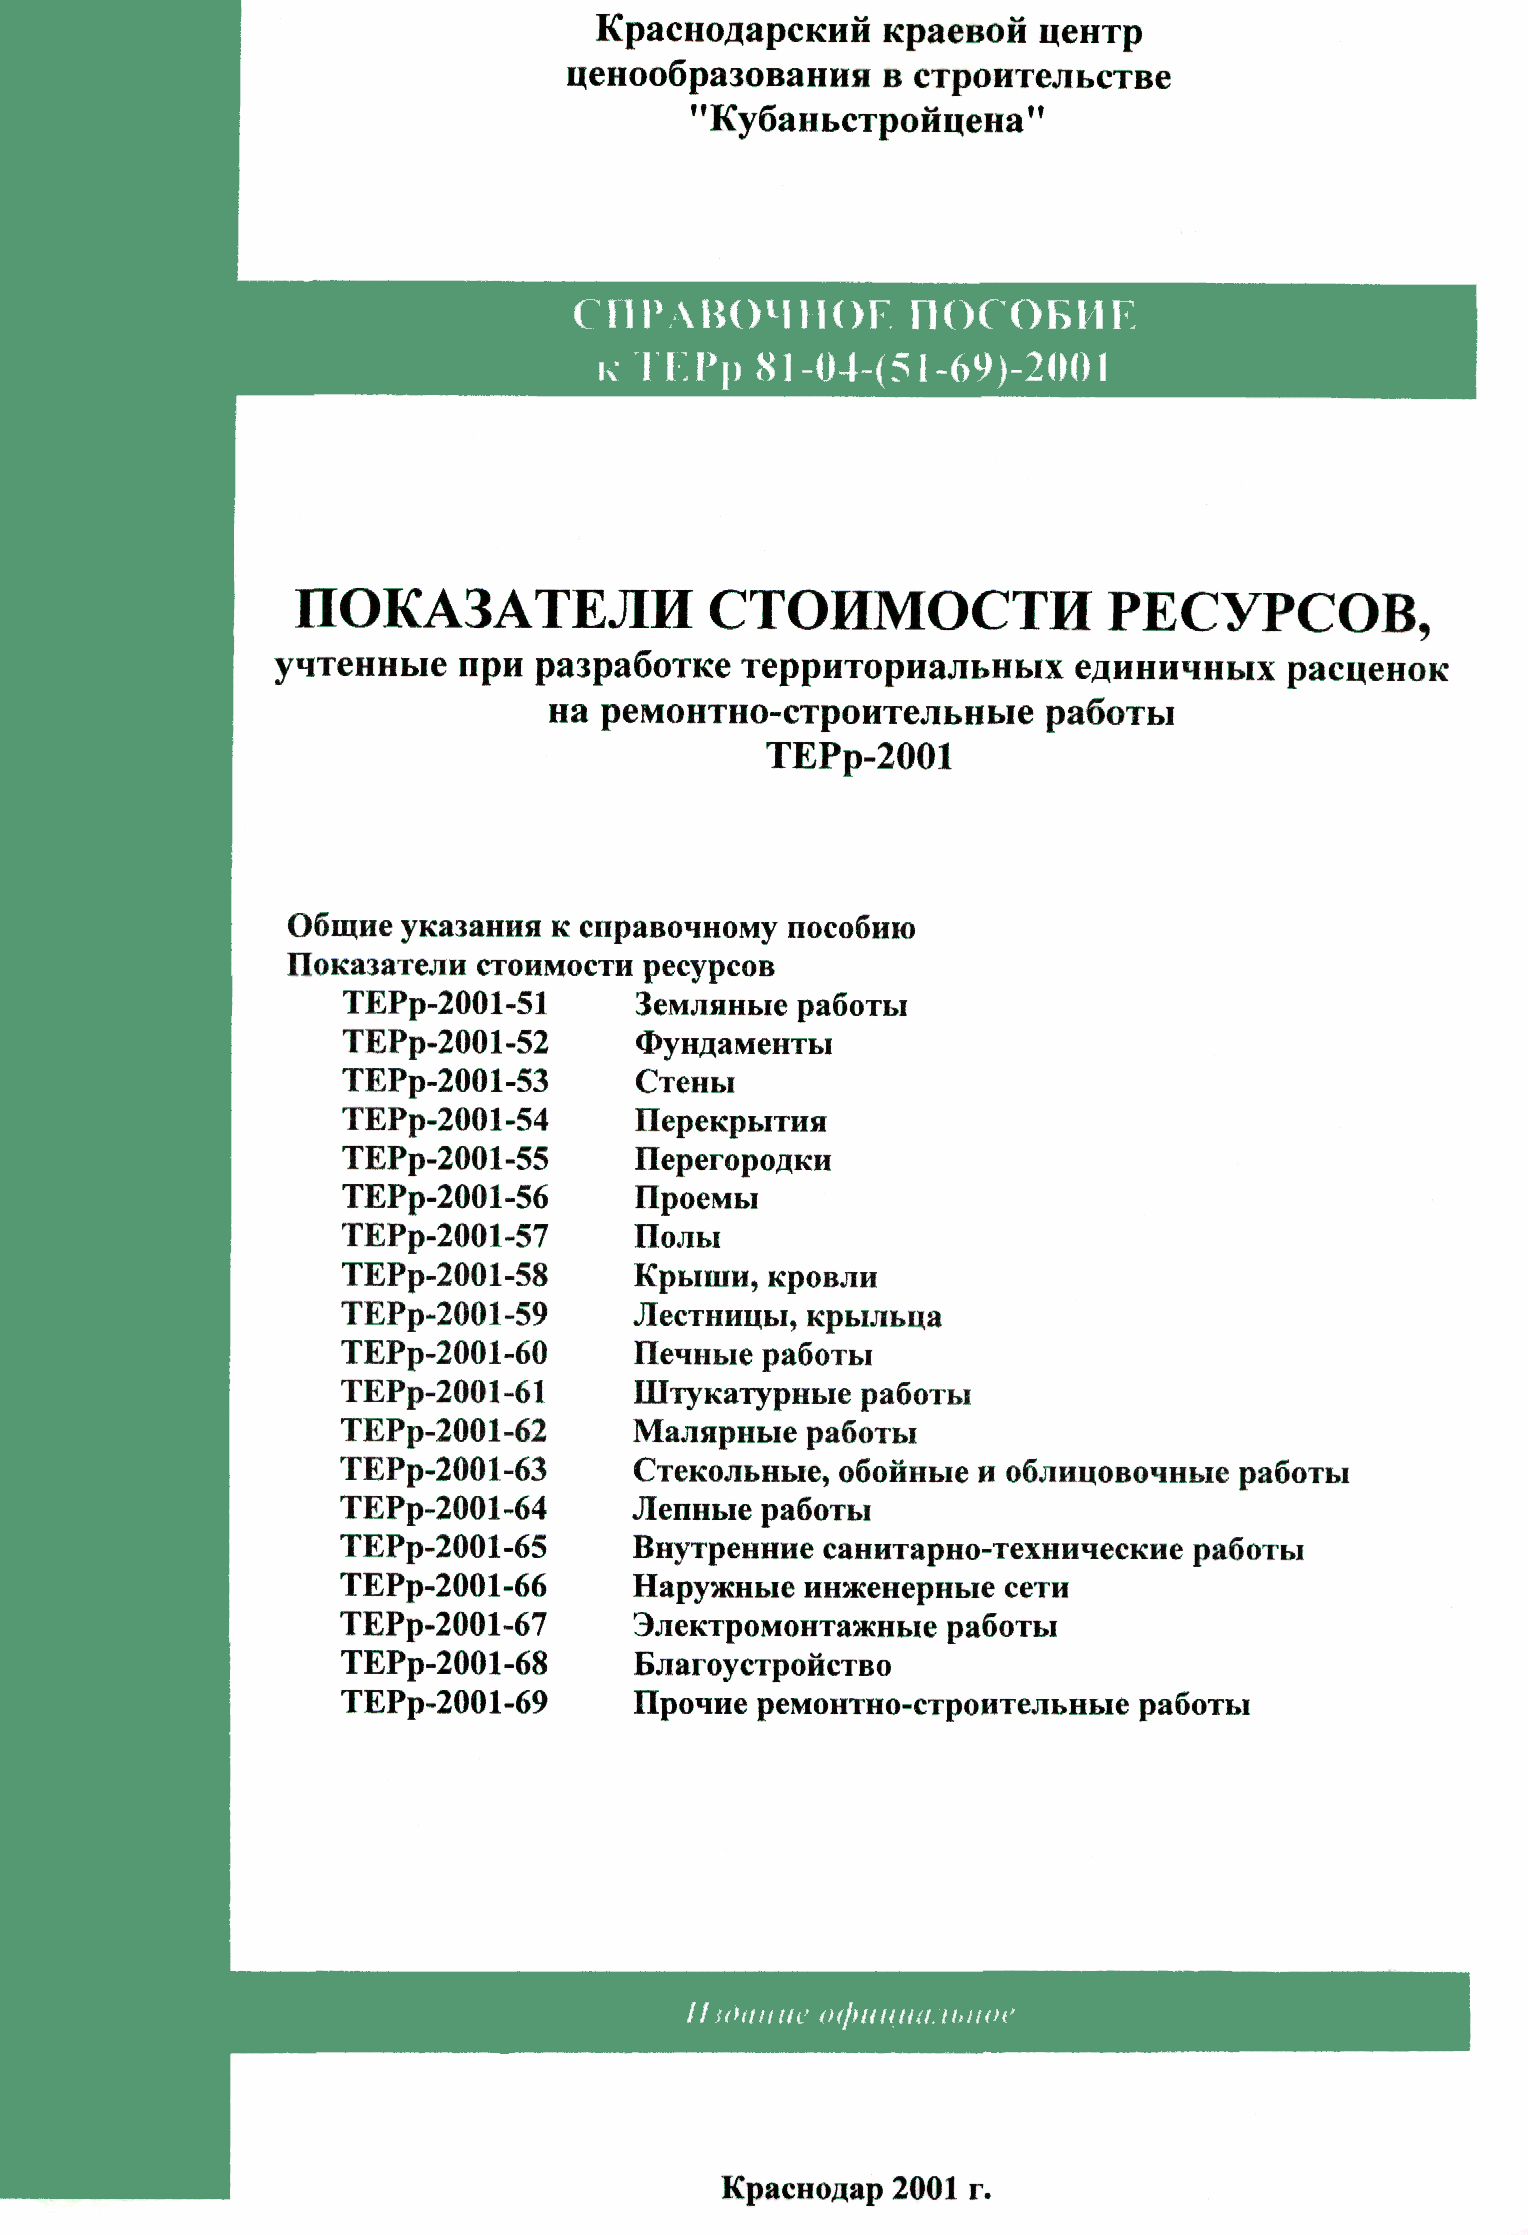 Справочное пособие к ТЕРр 81-04-54-2001